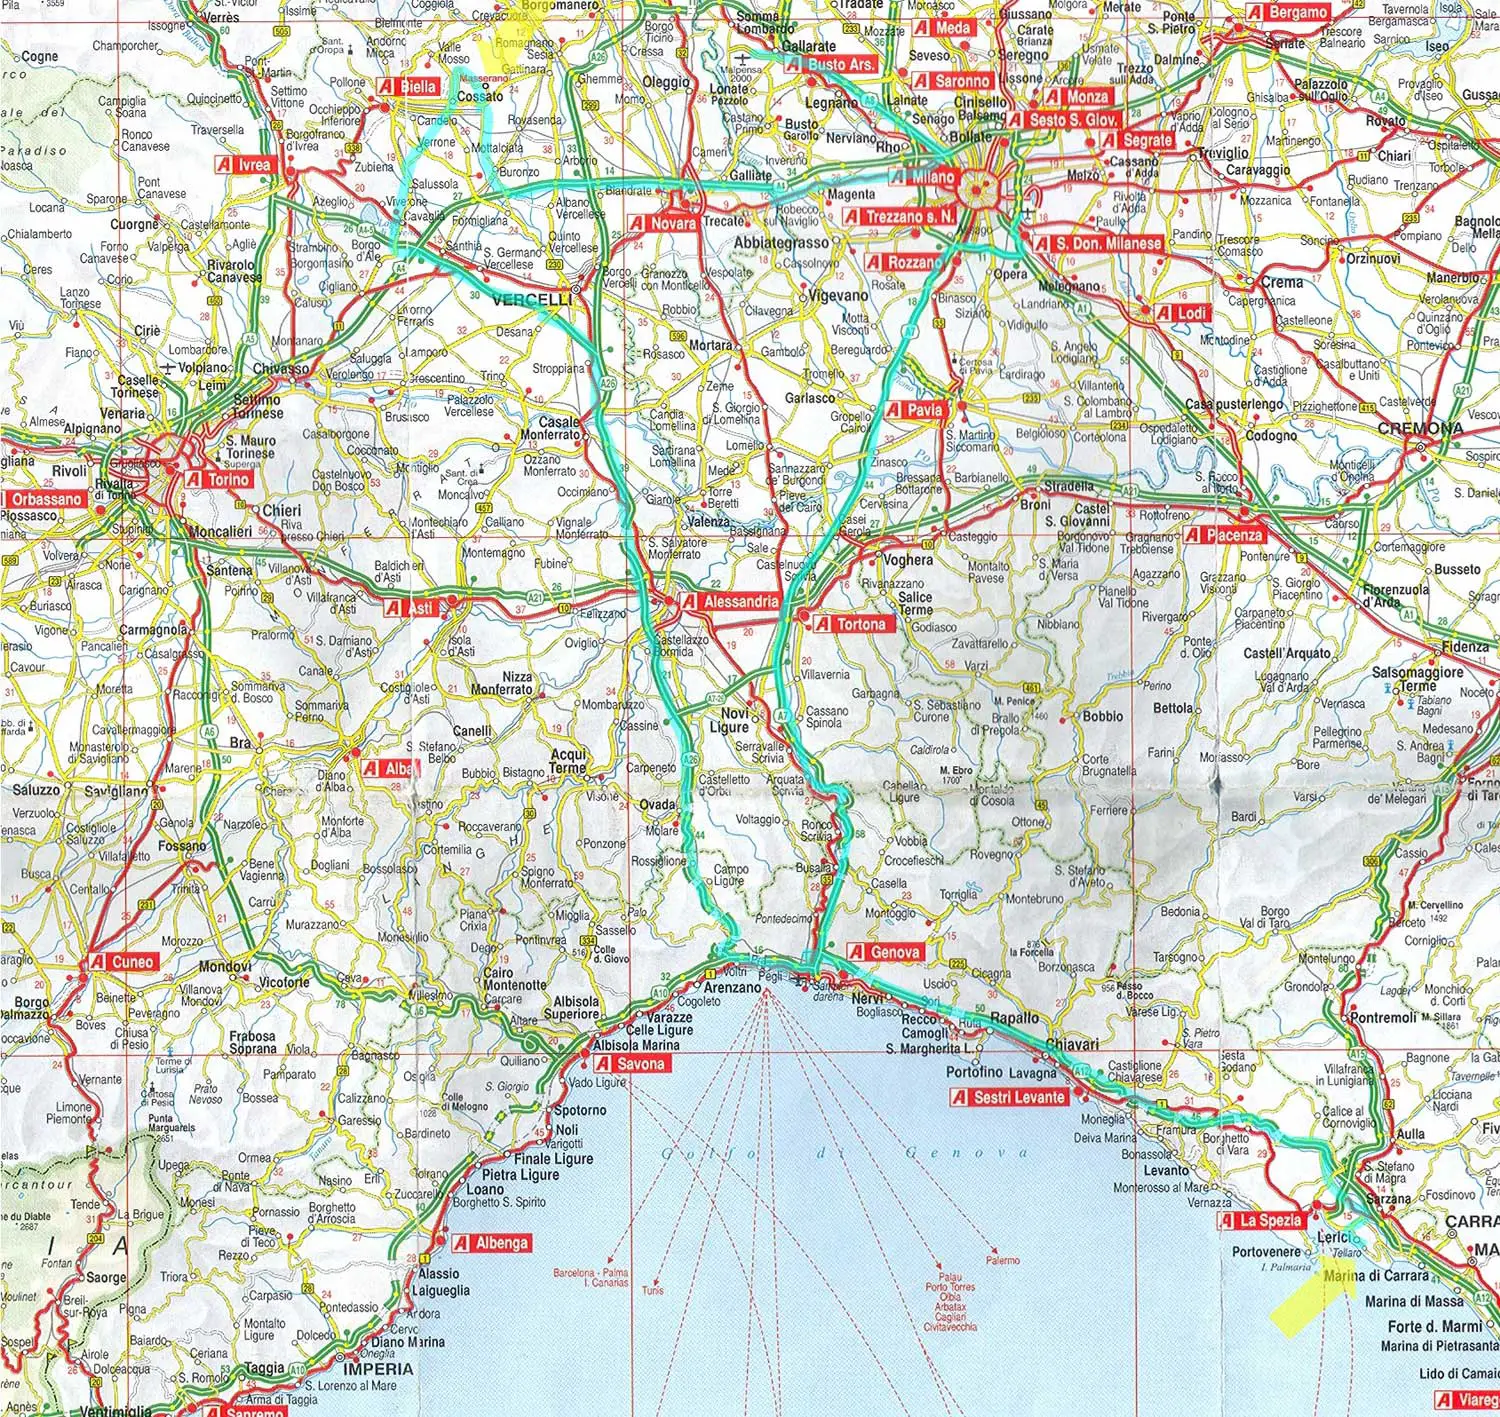 genoa-city-map-mapsof